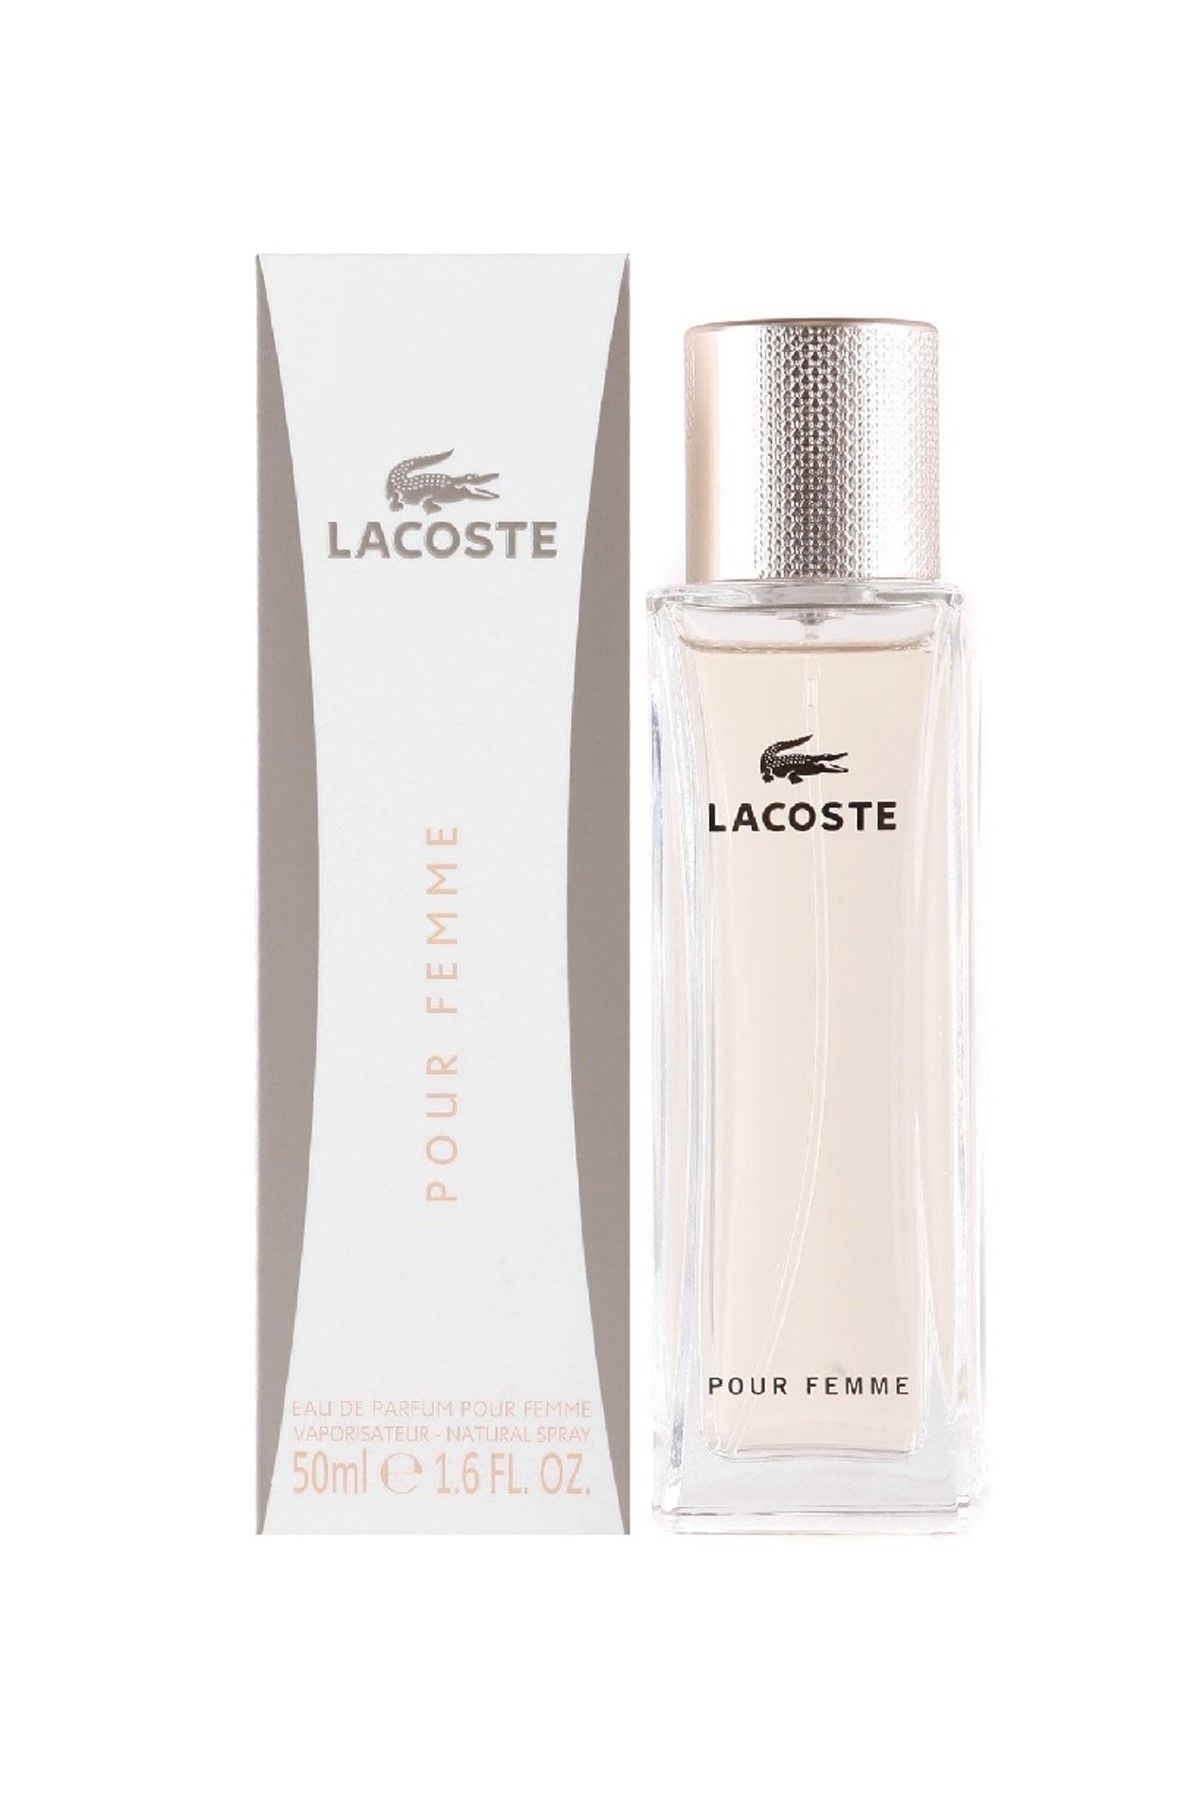 عطر زنانهPour Femme Edp 50 ml  لاگوست Lacoste (برند فرانسه)